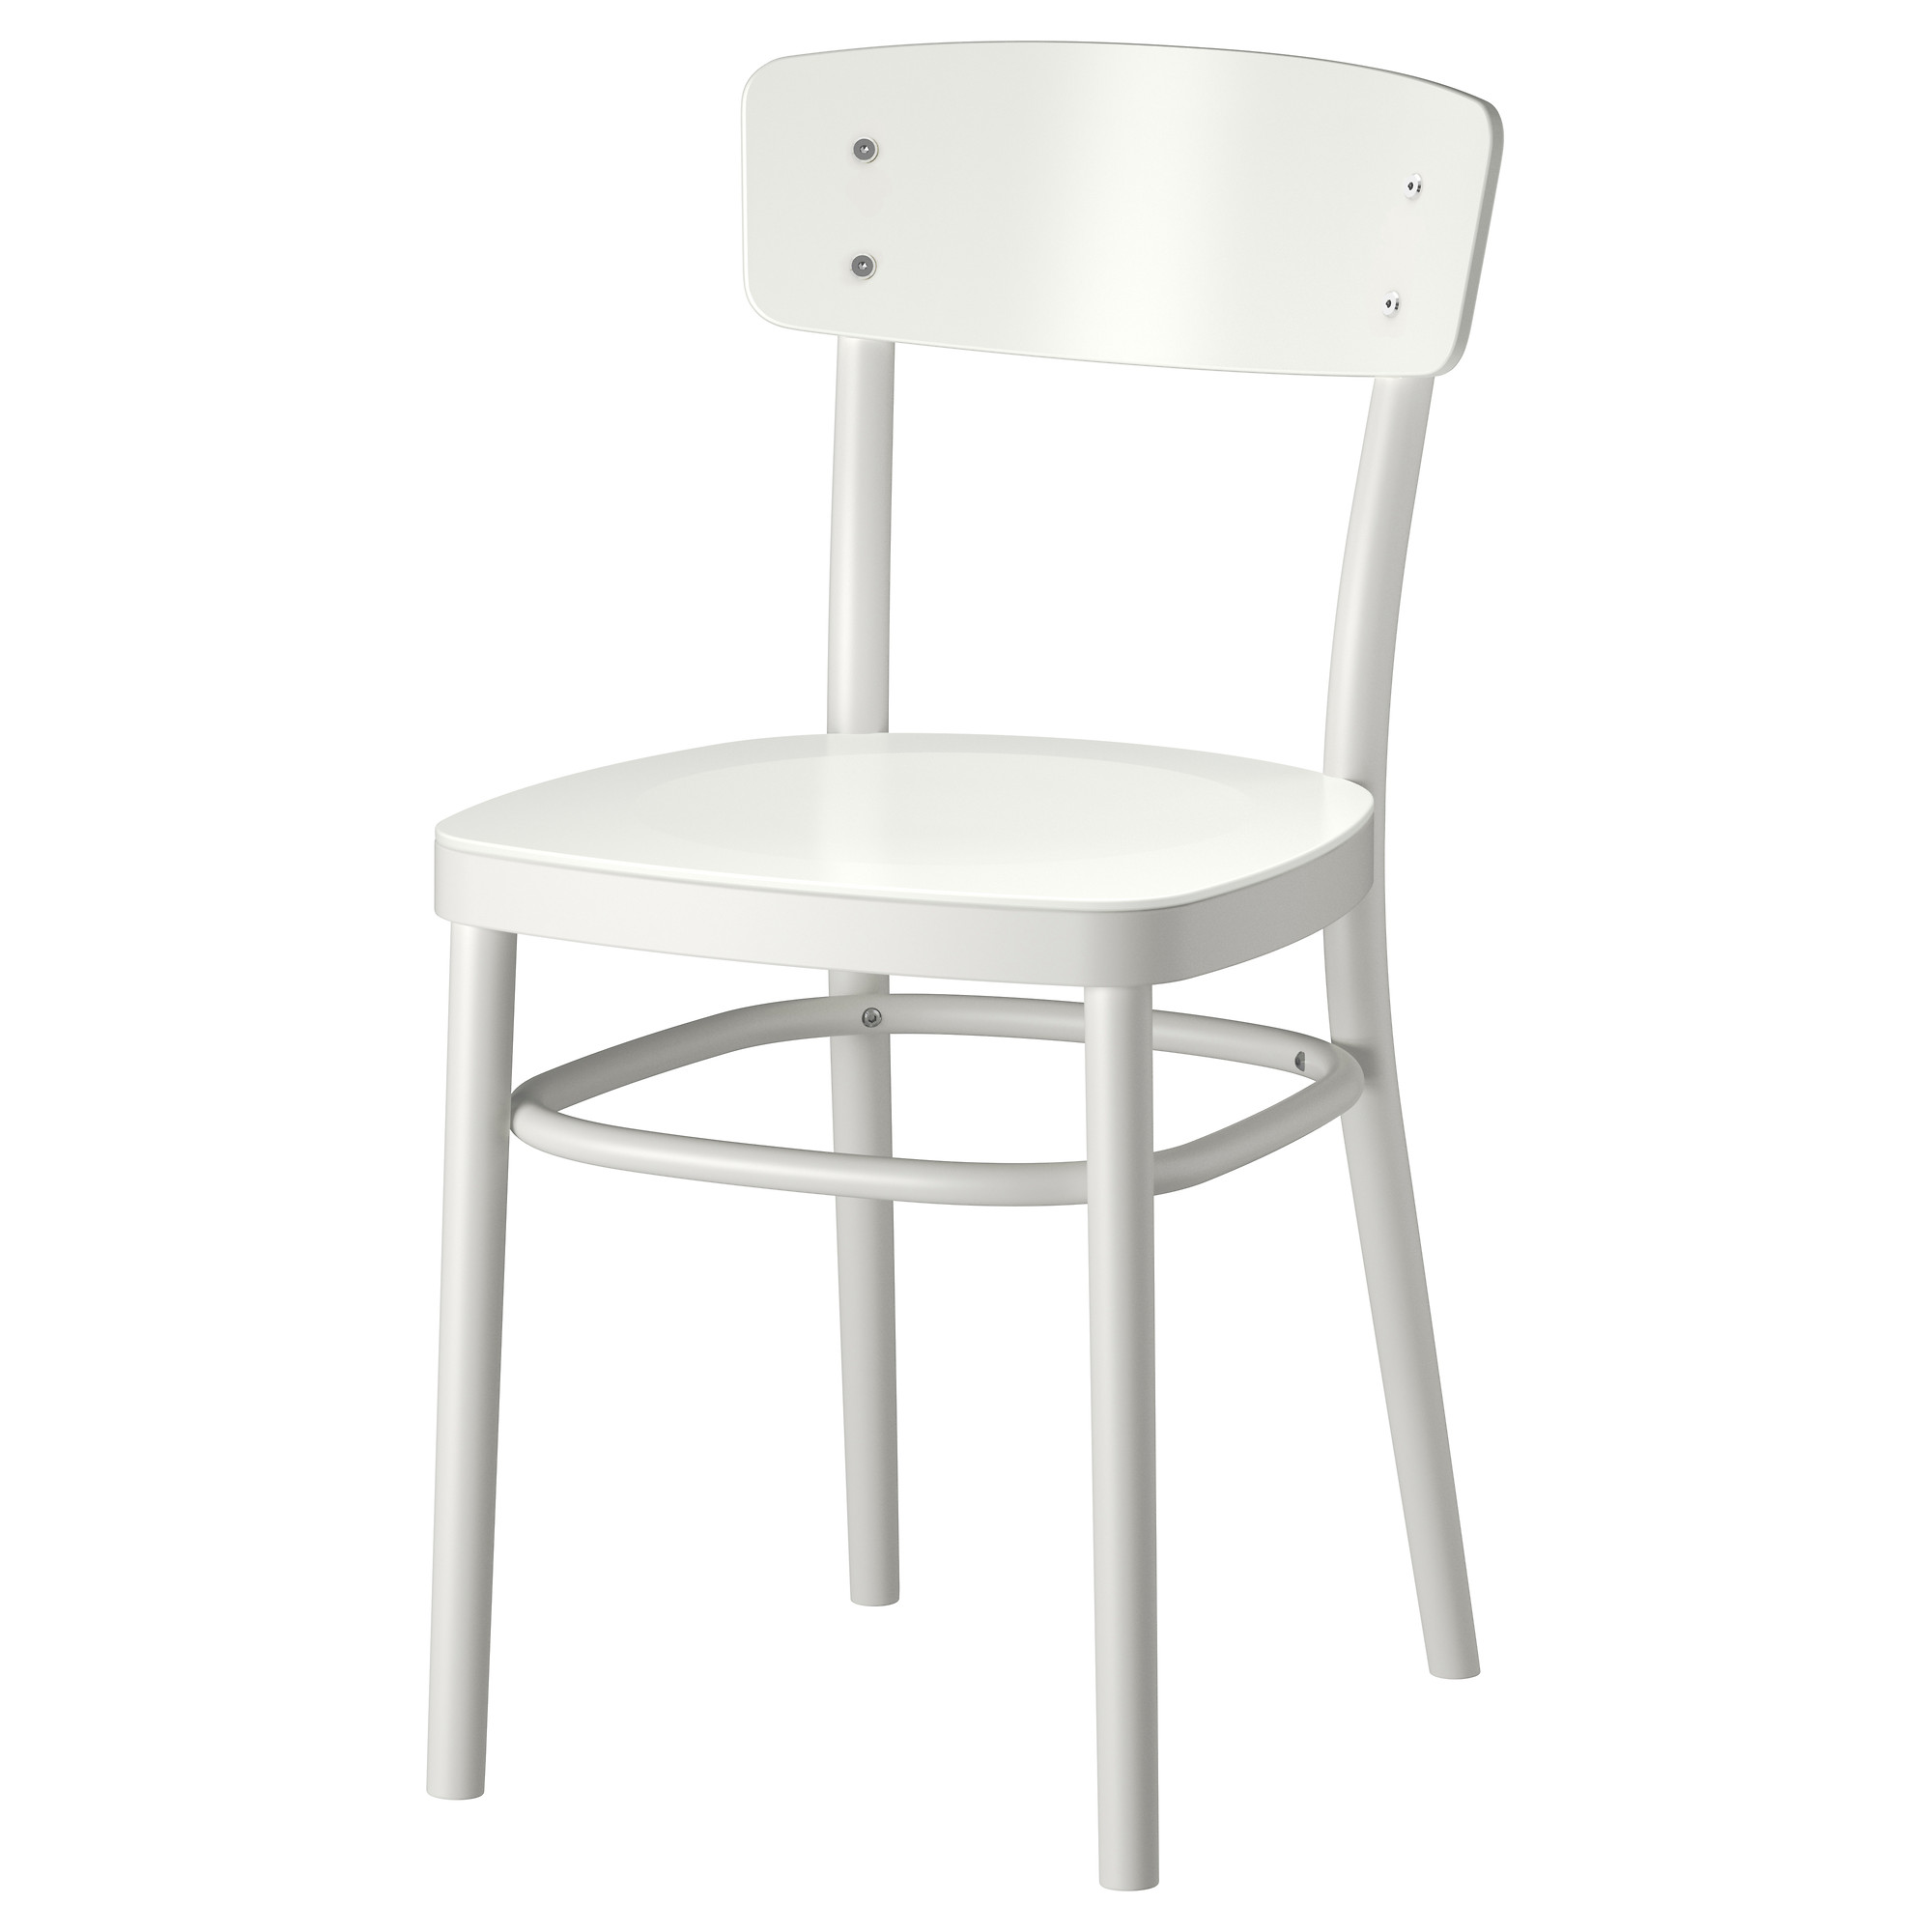 Kitchen Chairs Ikea 8 5118 